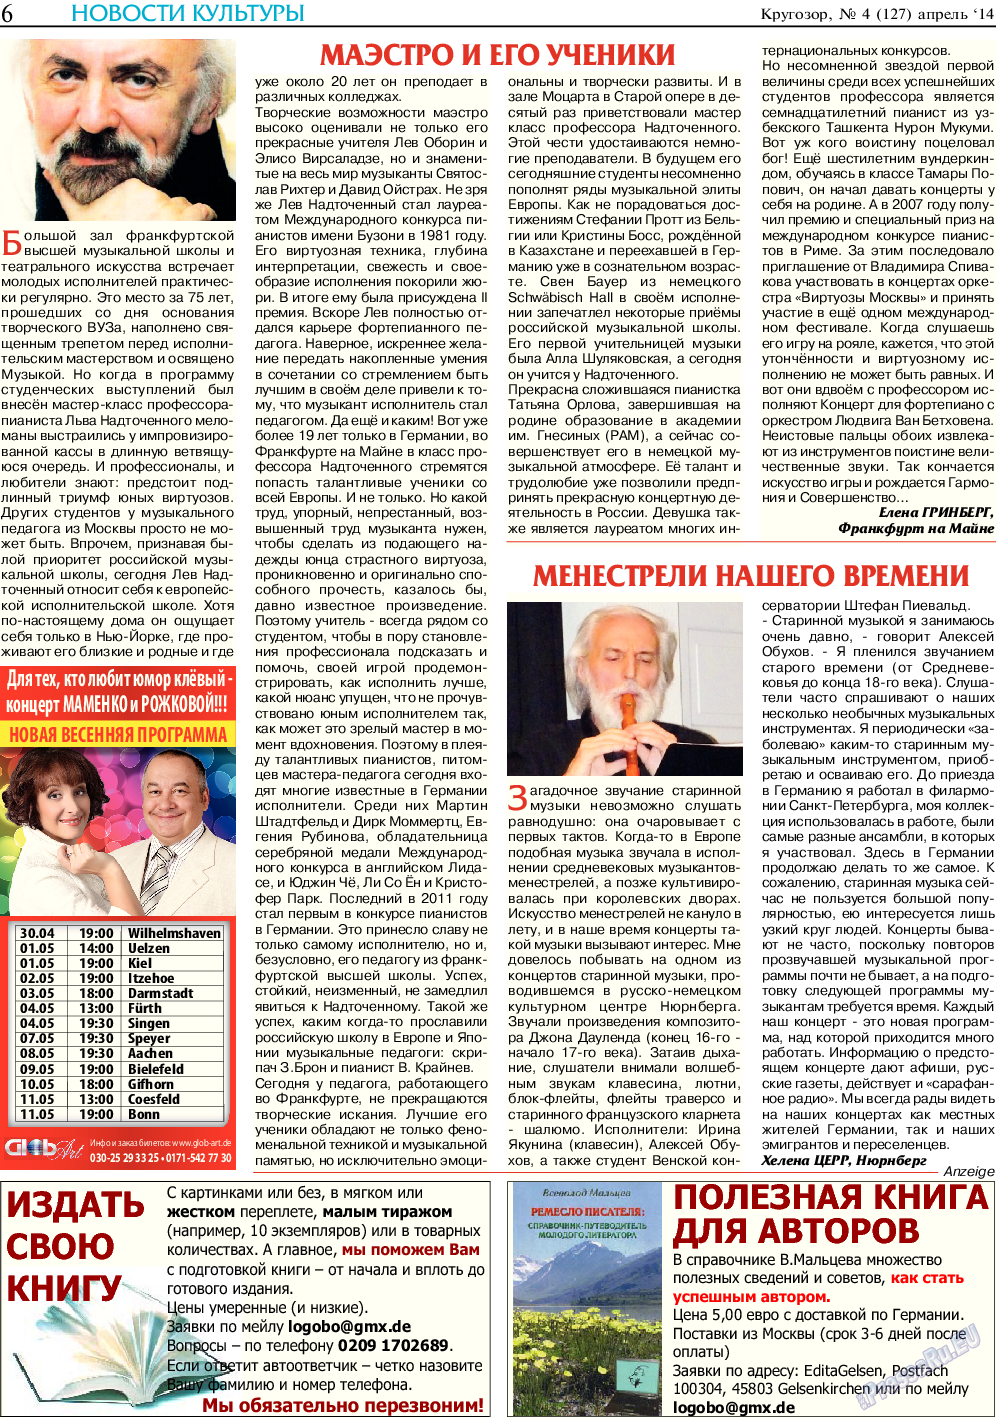 Кругозор (газета). 2014 год, номер 4, стр. 6